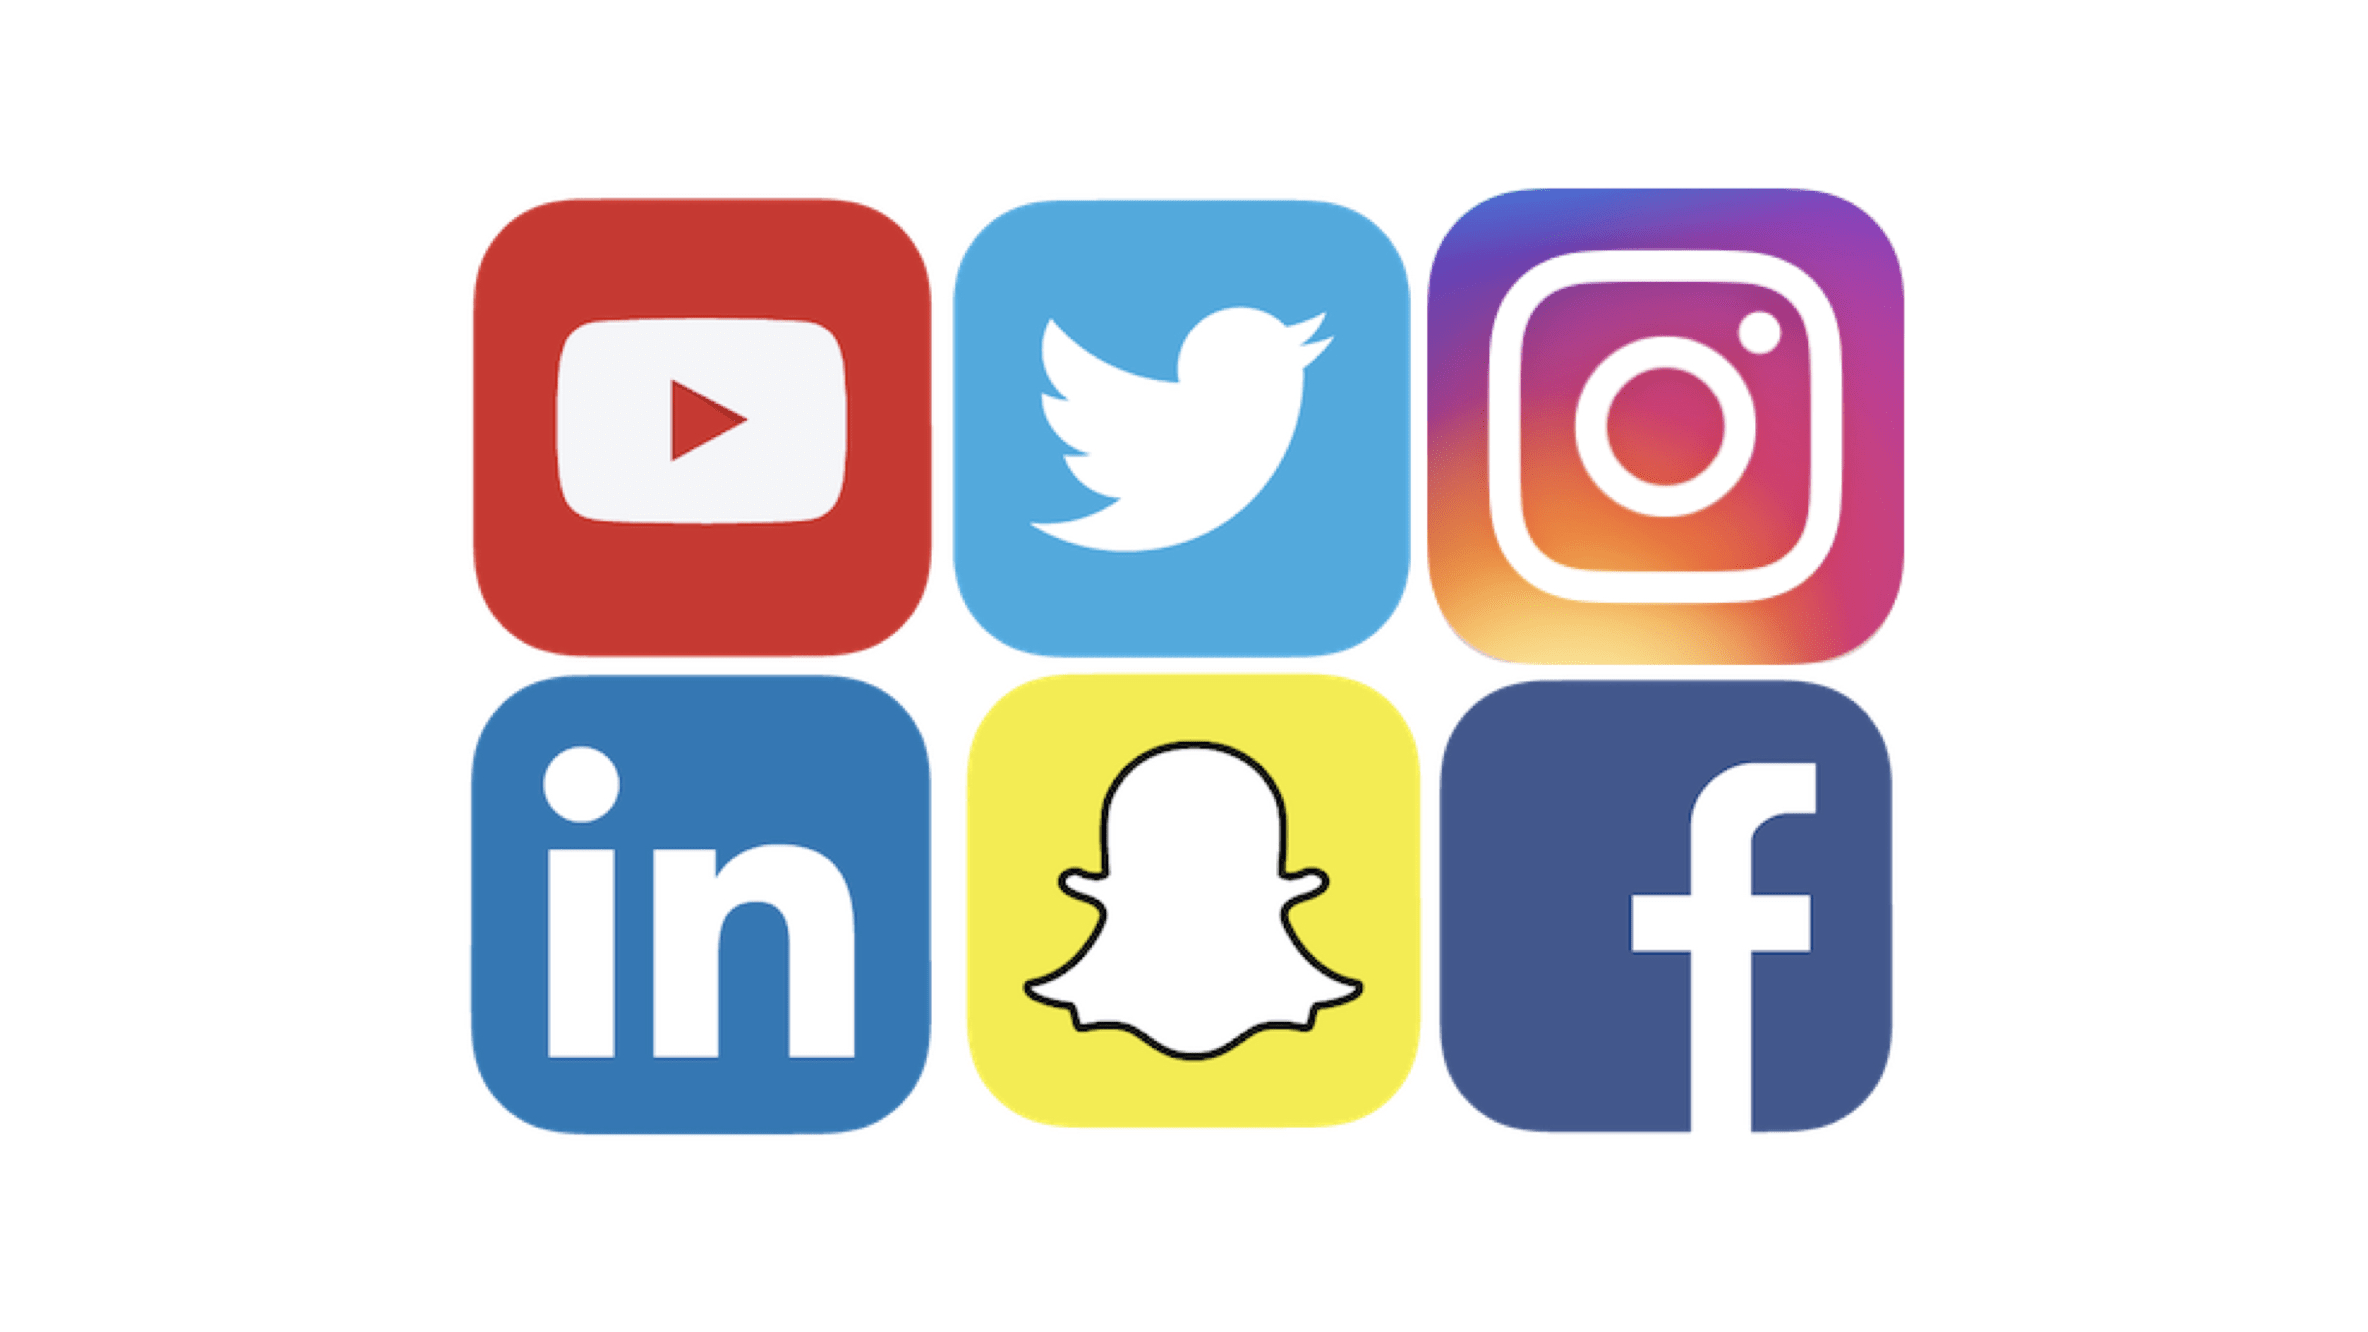 Эмблемы социальных сетей